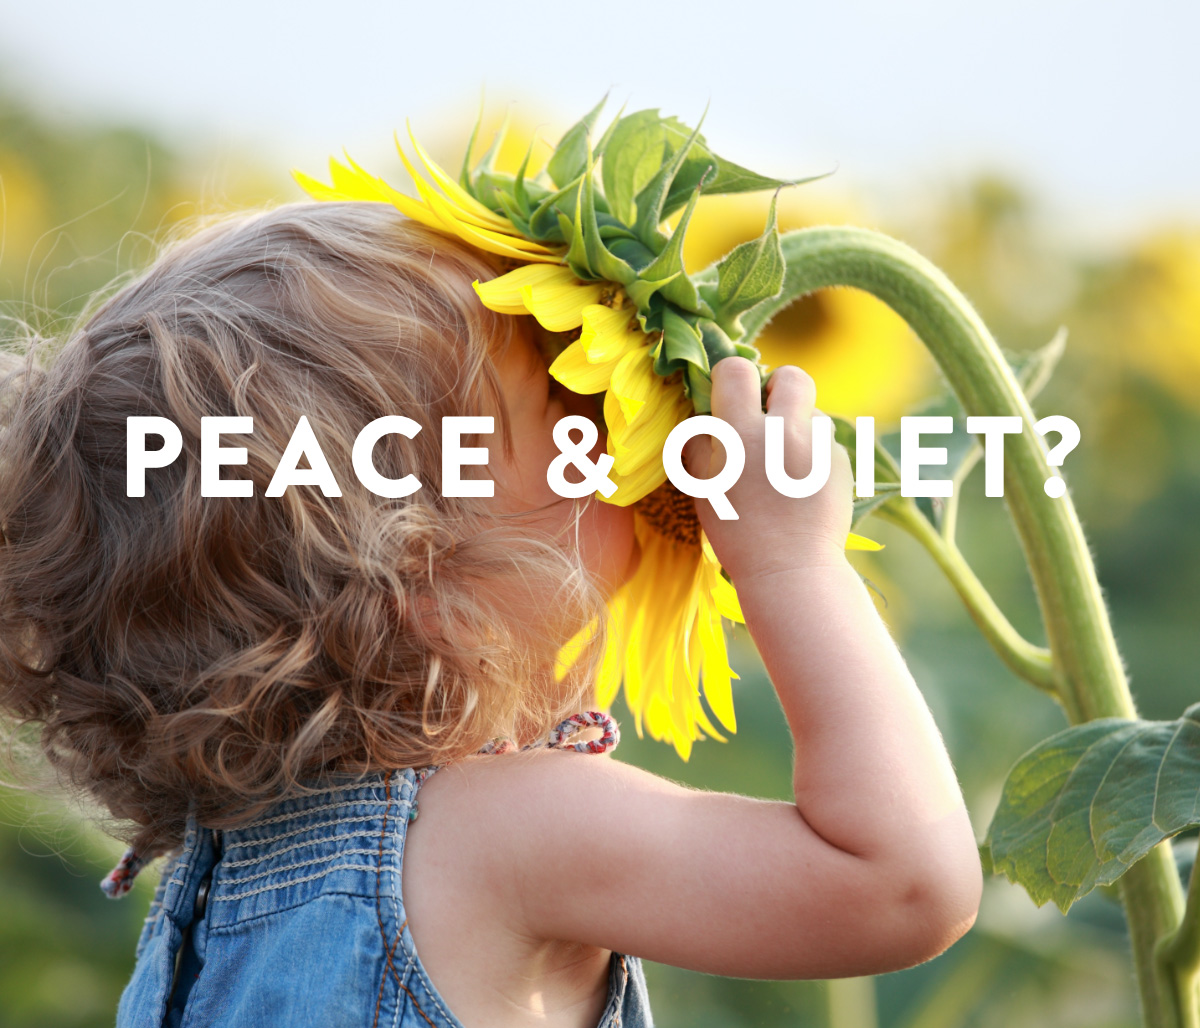 Peace & Quiet?